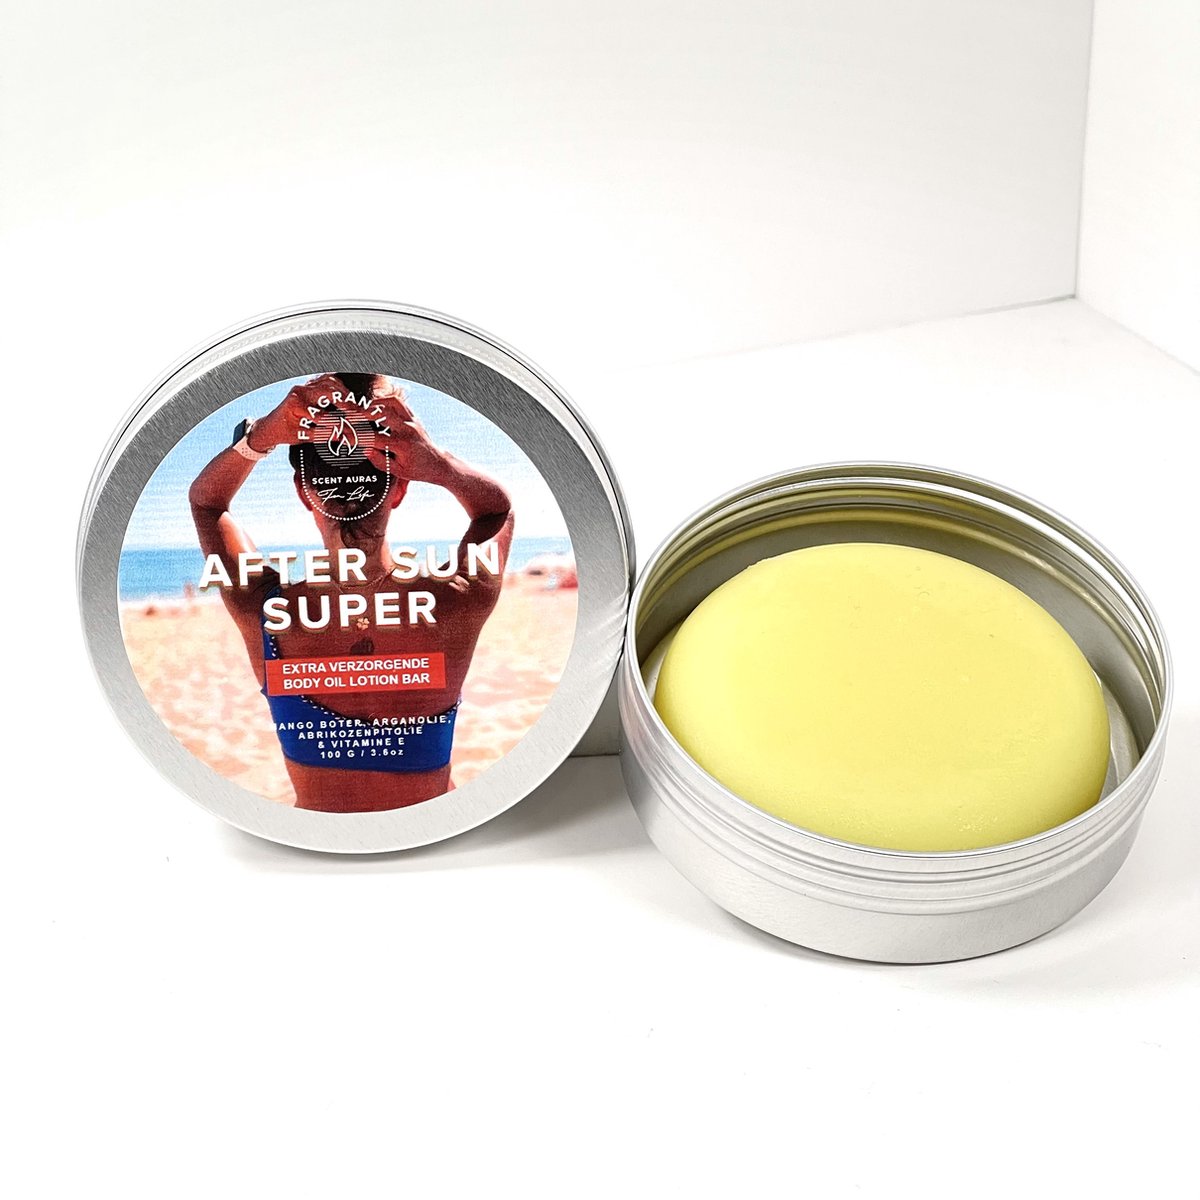 Aftersun Super Lotion bar met 100% pure arganolie – voedende bescherming voor de huid na het zonnen